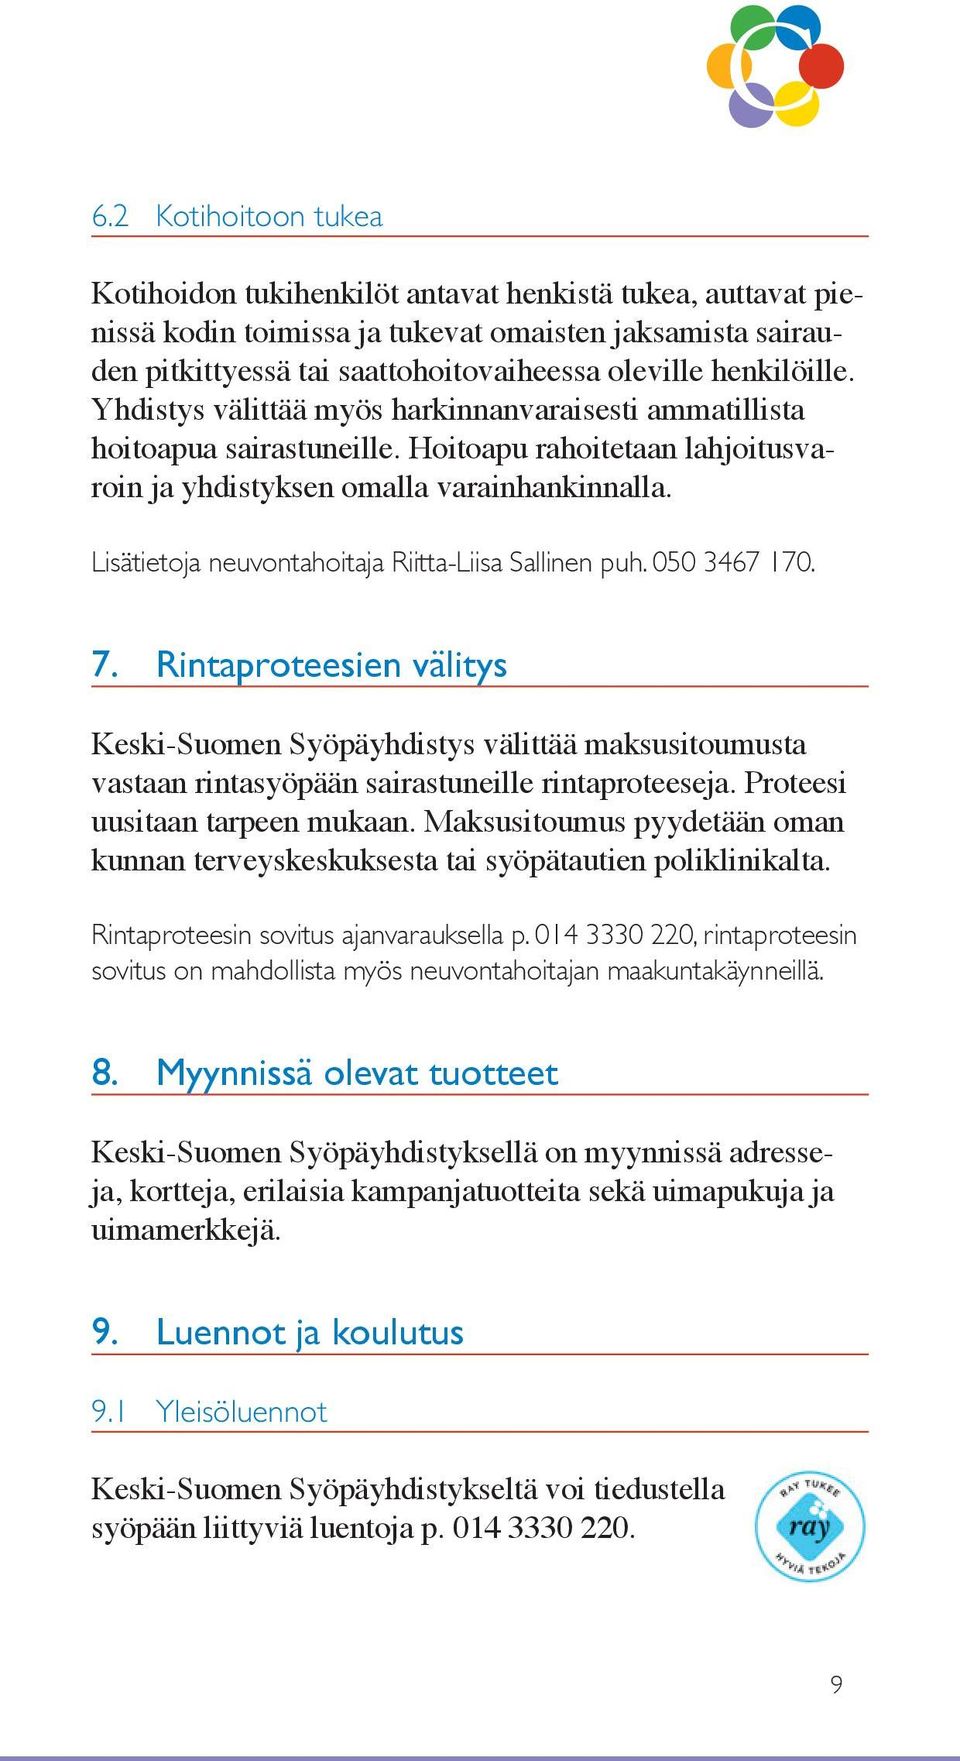 Lisätietoja neuvontahoitaja Riitta-Liisa Sallinen puh. 050 3467 170. 7. Rintaproteesien välitys Keski-Suomen Syöpäyhdistys välittää maksusitoumusta vastaan rintasyöpään sairastuneille rintaproteeseja.